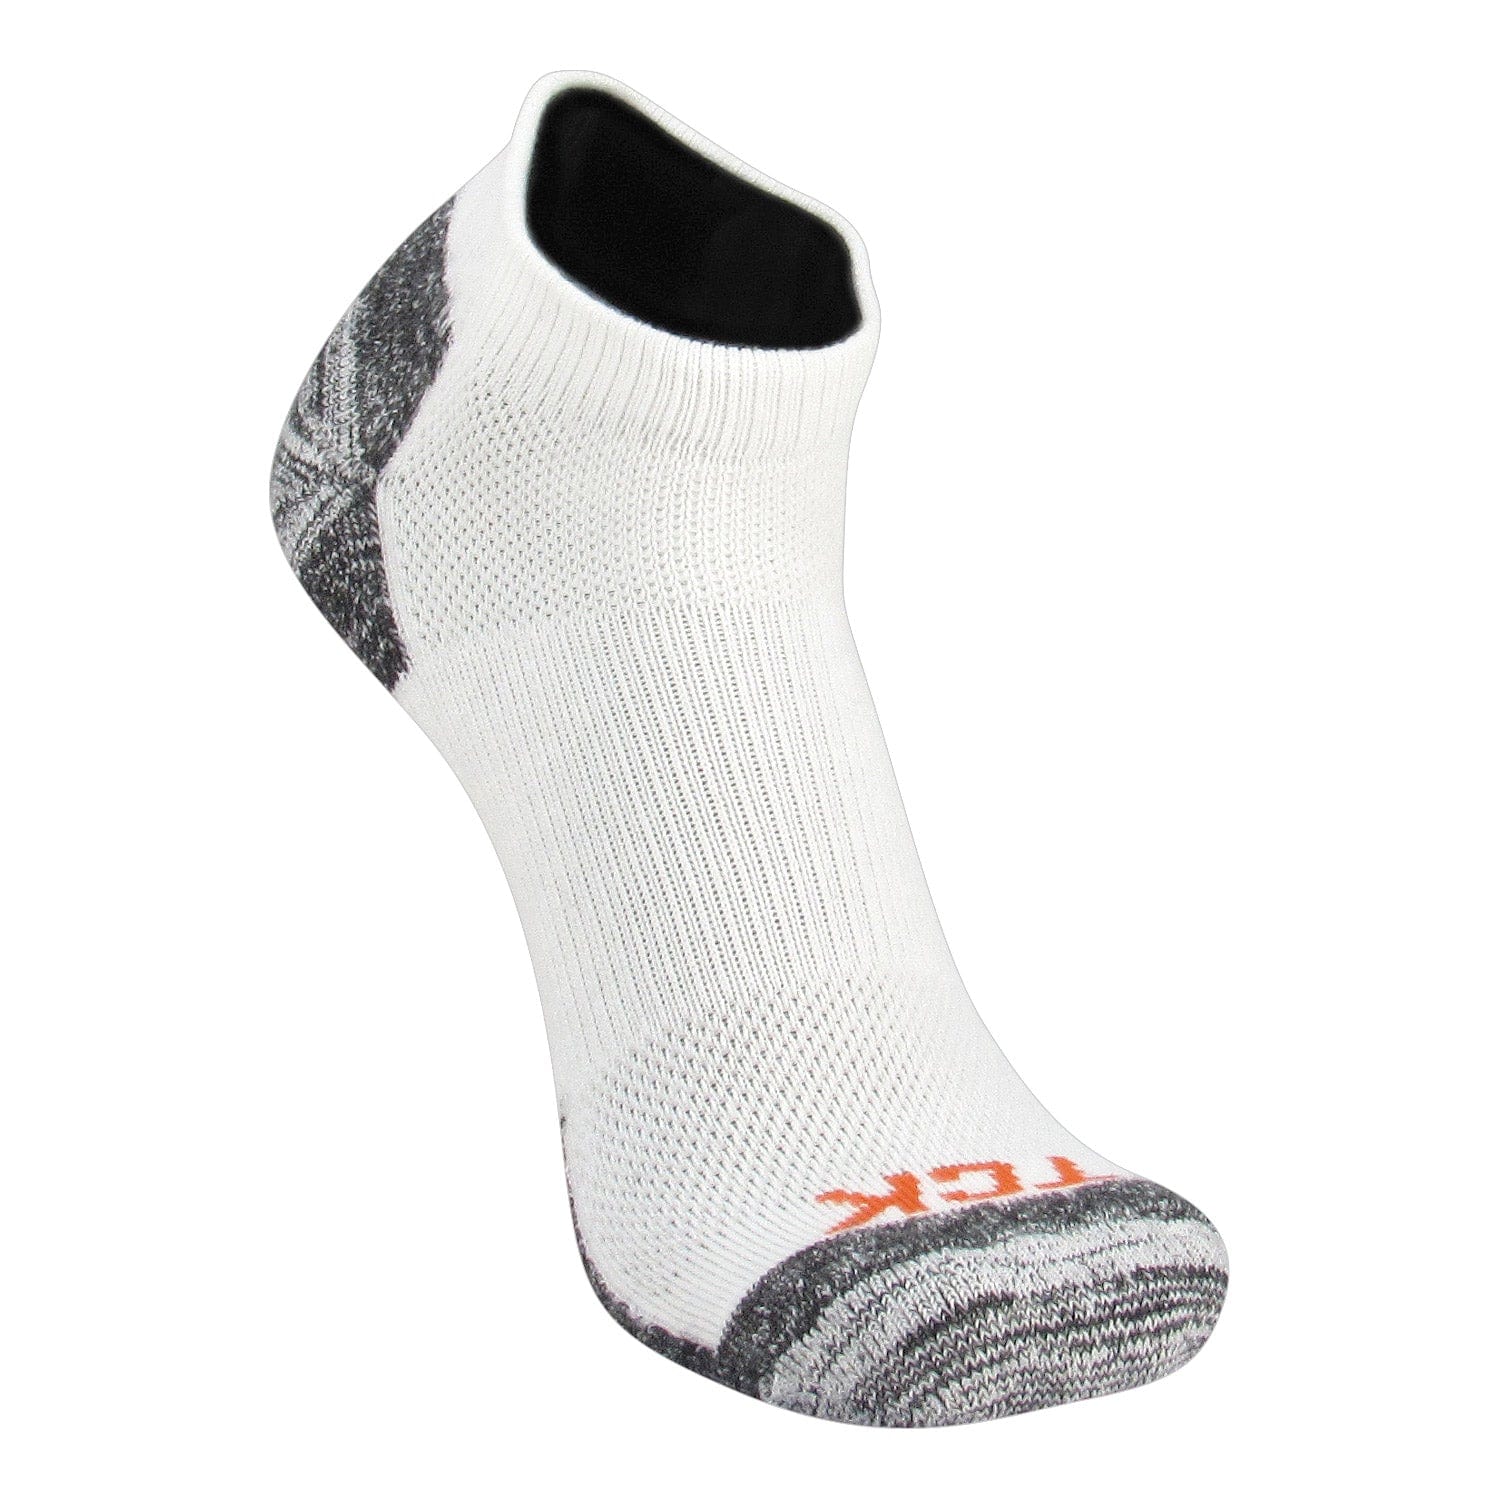 blister resistant golf socks